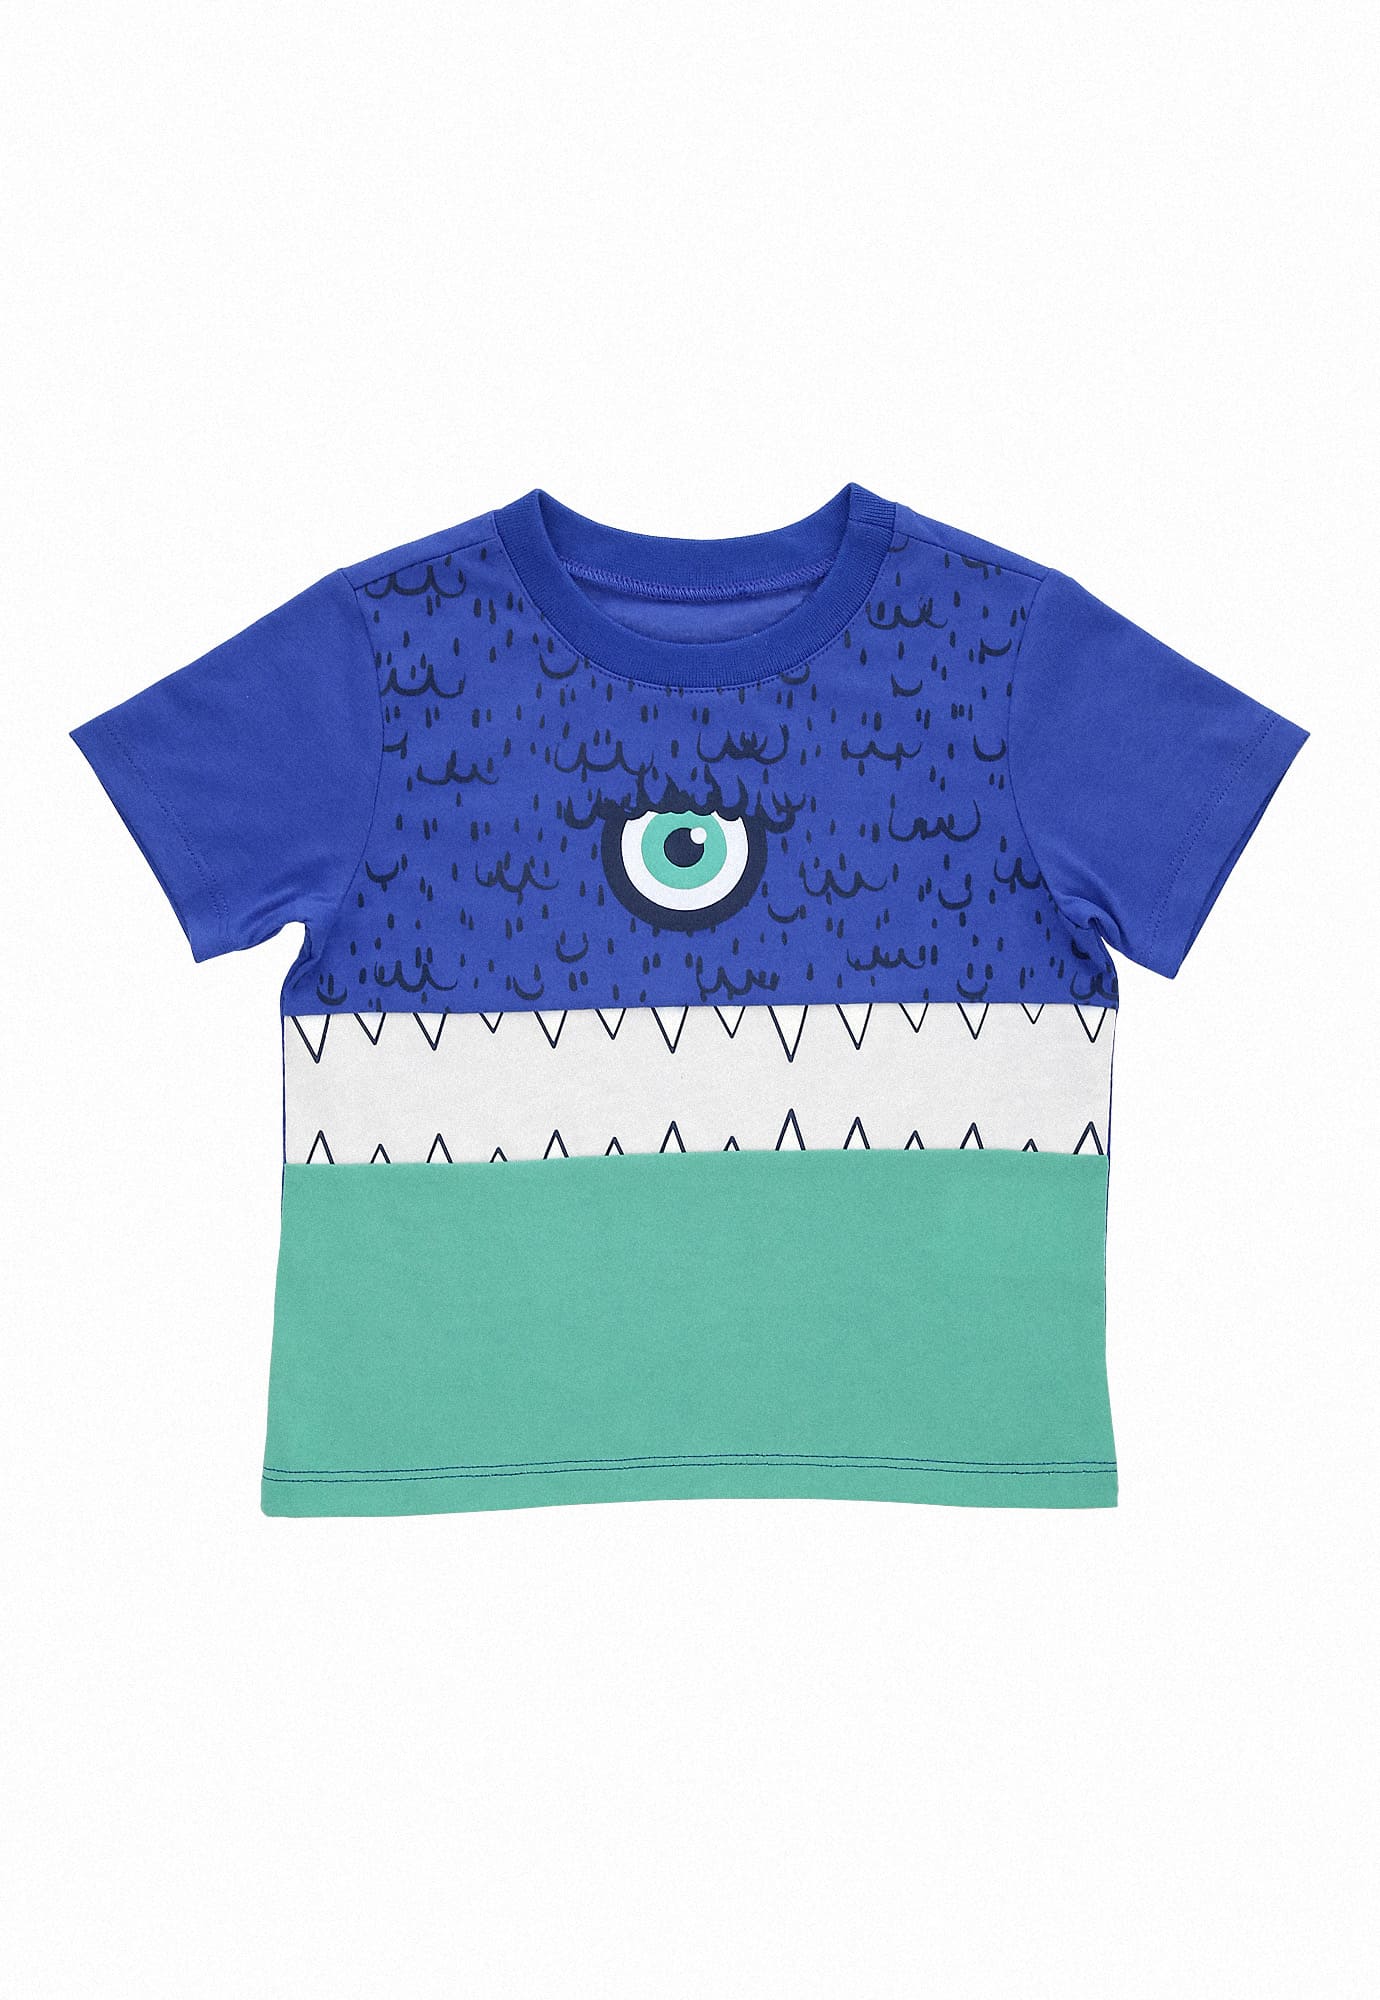 Camiseta azul rey manga corta, en bloques de colores, estampado frontal y cuello redondo para bebé niño